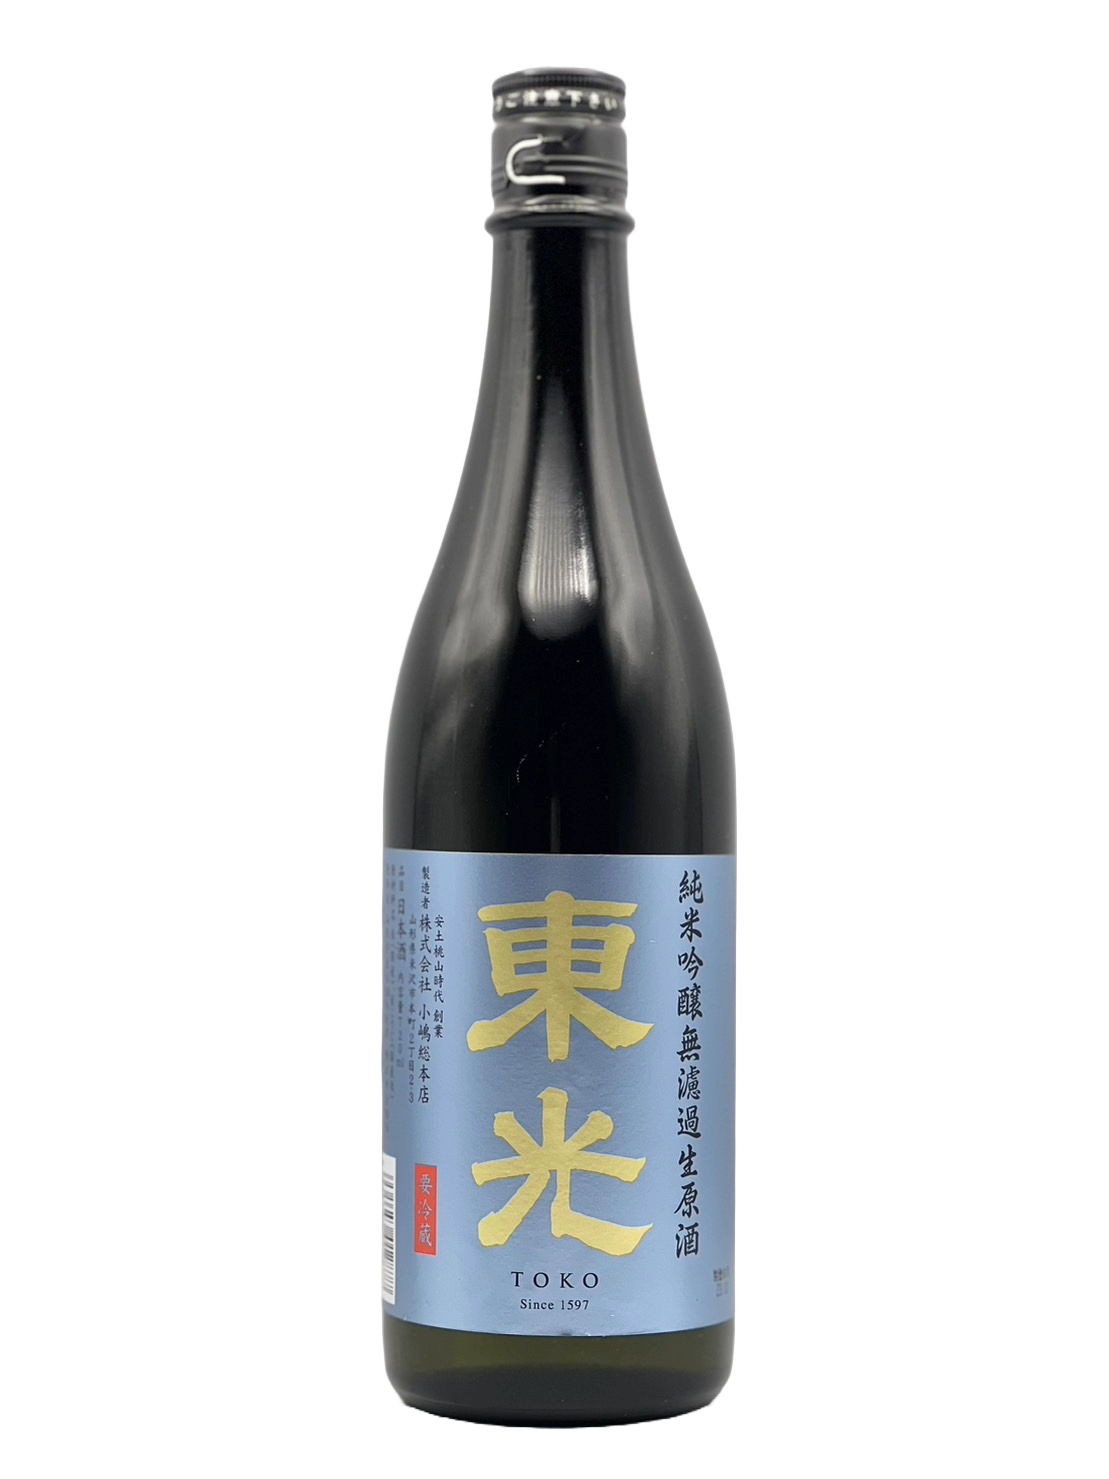 Toko Junmai Ginjo unfiltered raw sake [R5BY new sake]